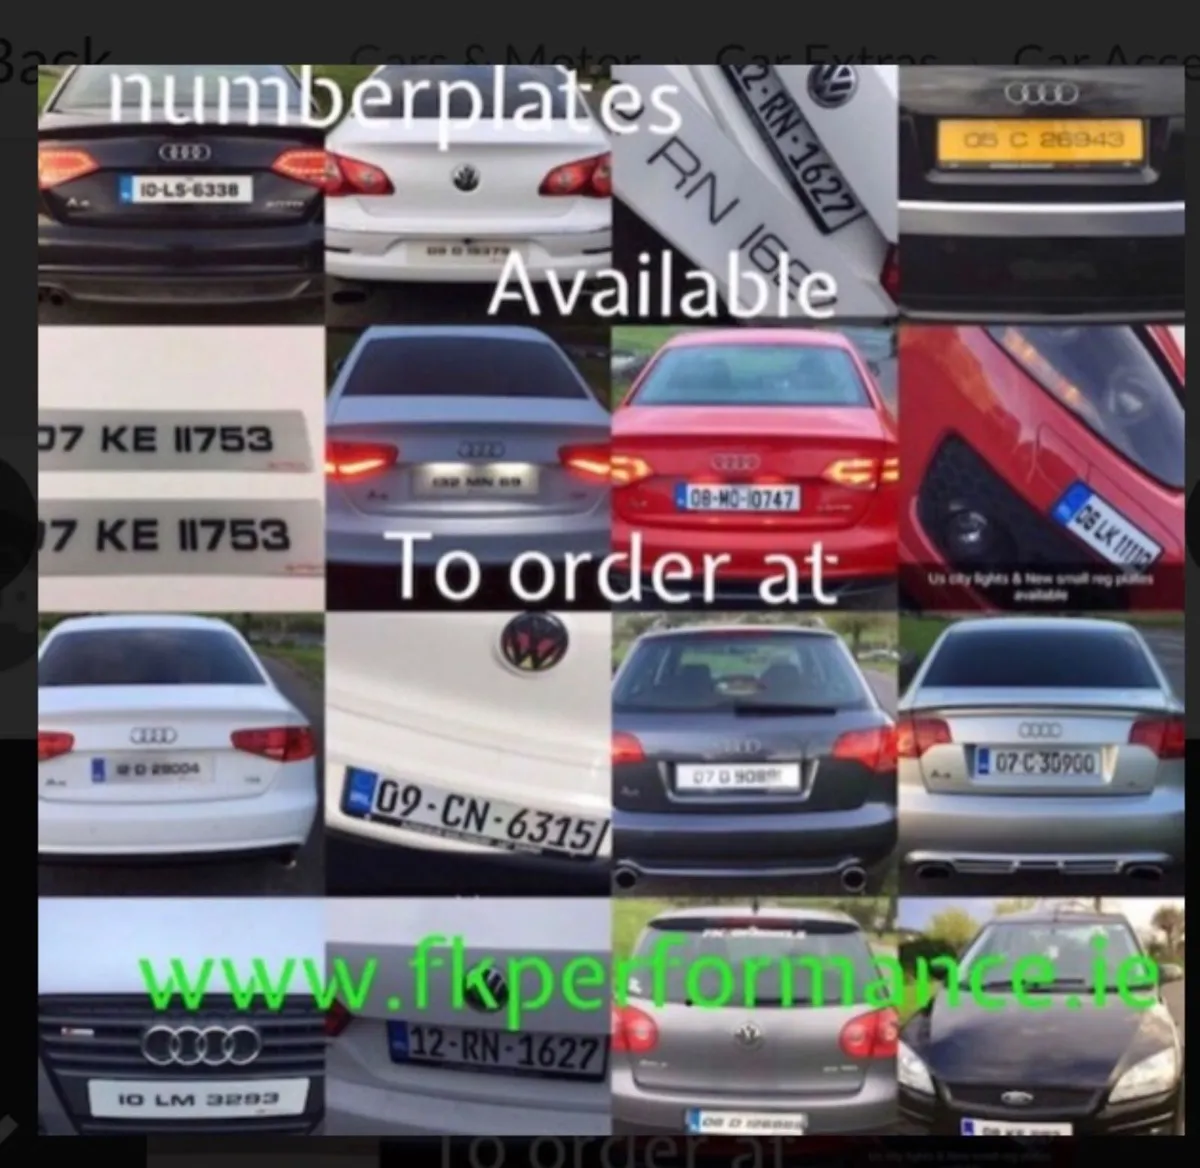 Ultimate number plates delivered